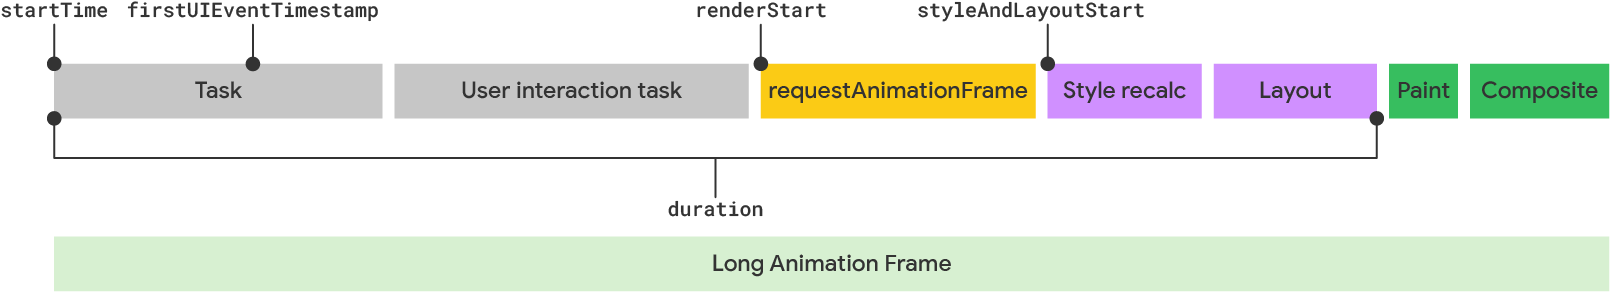 Visualisasi frame animasi panjang menurut model LoAF.